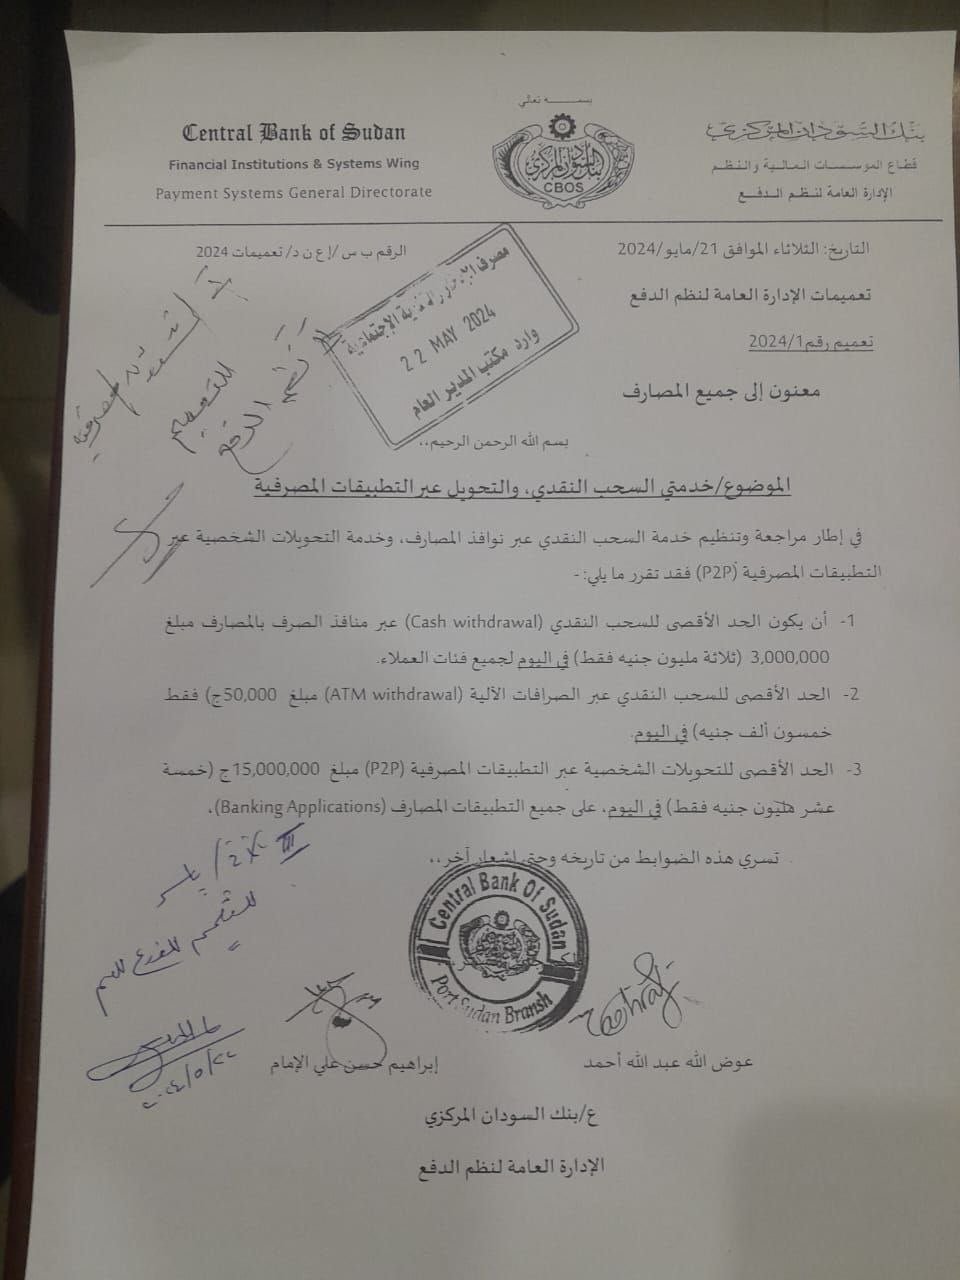 بنك السودان يصدر قرارات جديدة بشأن السحب النقدي والتطبيقات المصرفية..محاصرة إنفلات الدولار